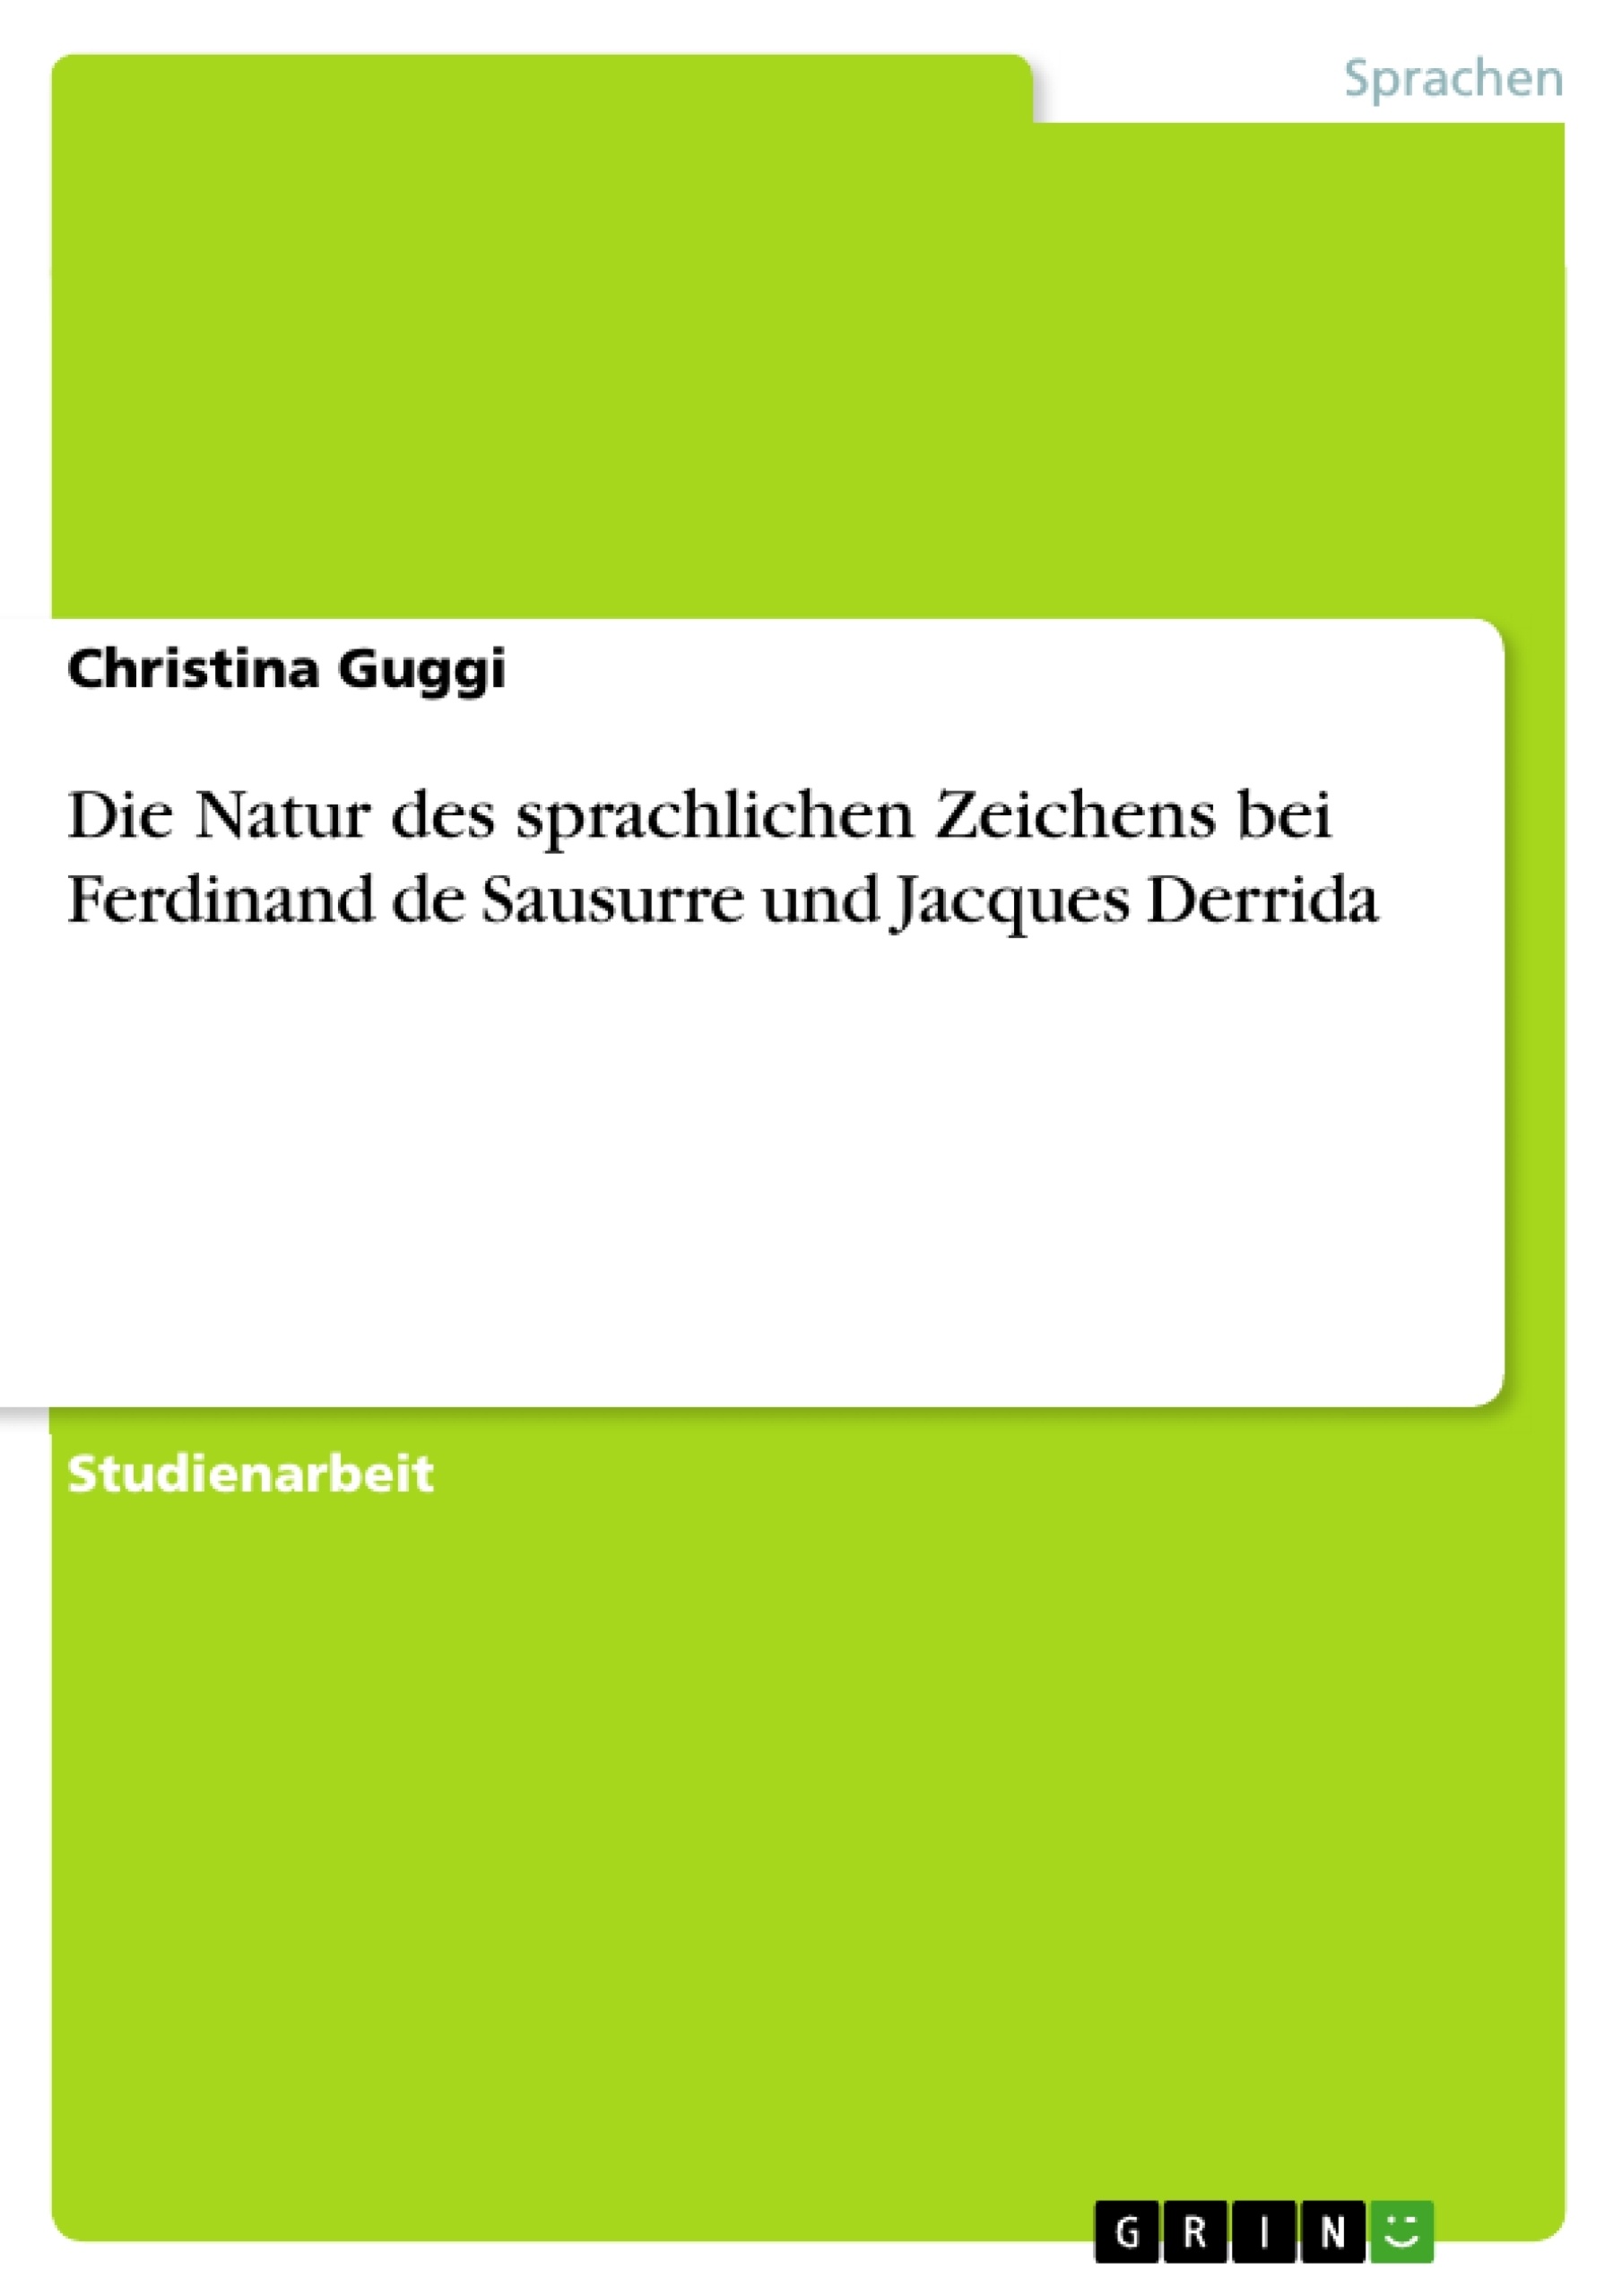 Título: Die Natur des sprachlichen Zeichens bei Ferdinand de Sausurre und Jacques Derrida